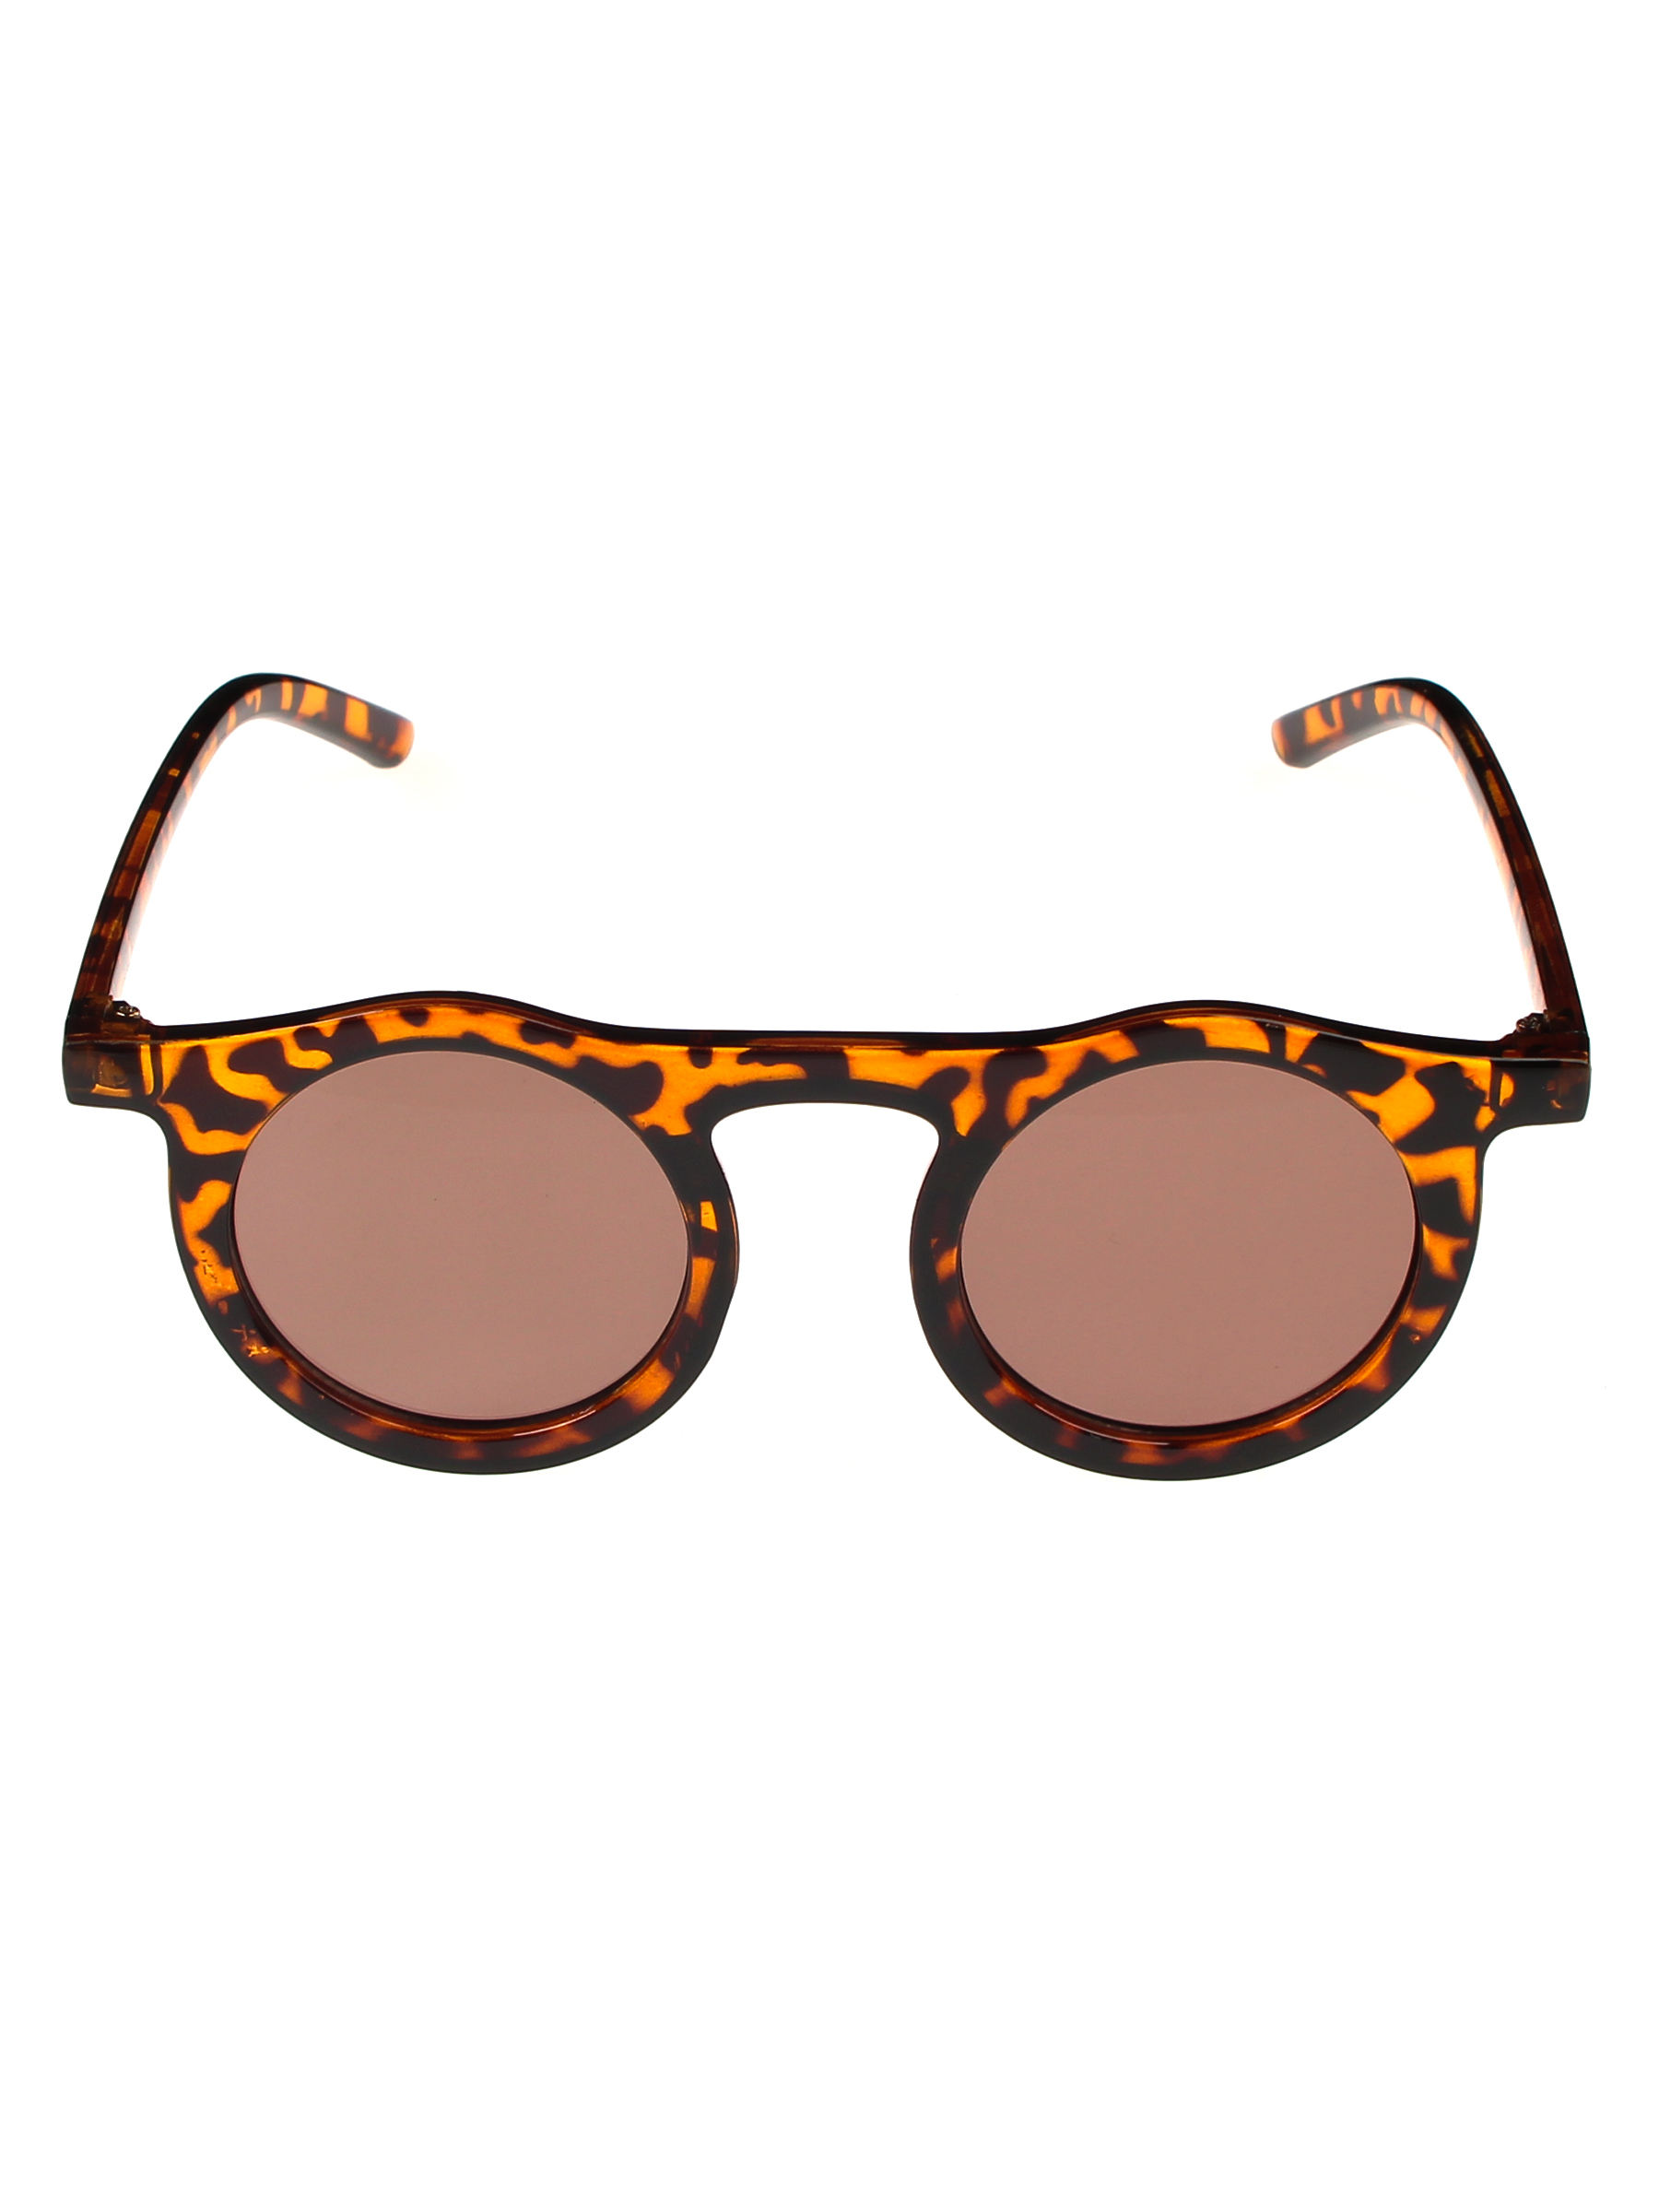 Солнцезащитные очки женские Pretty Mania NDP013 коричневые